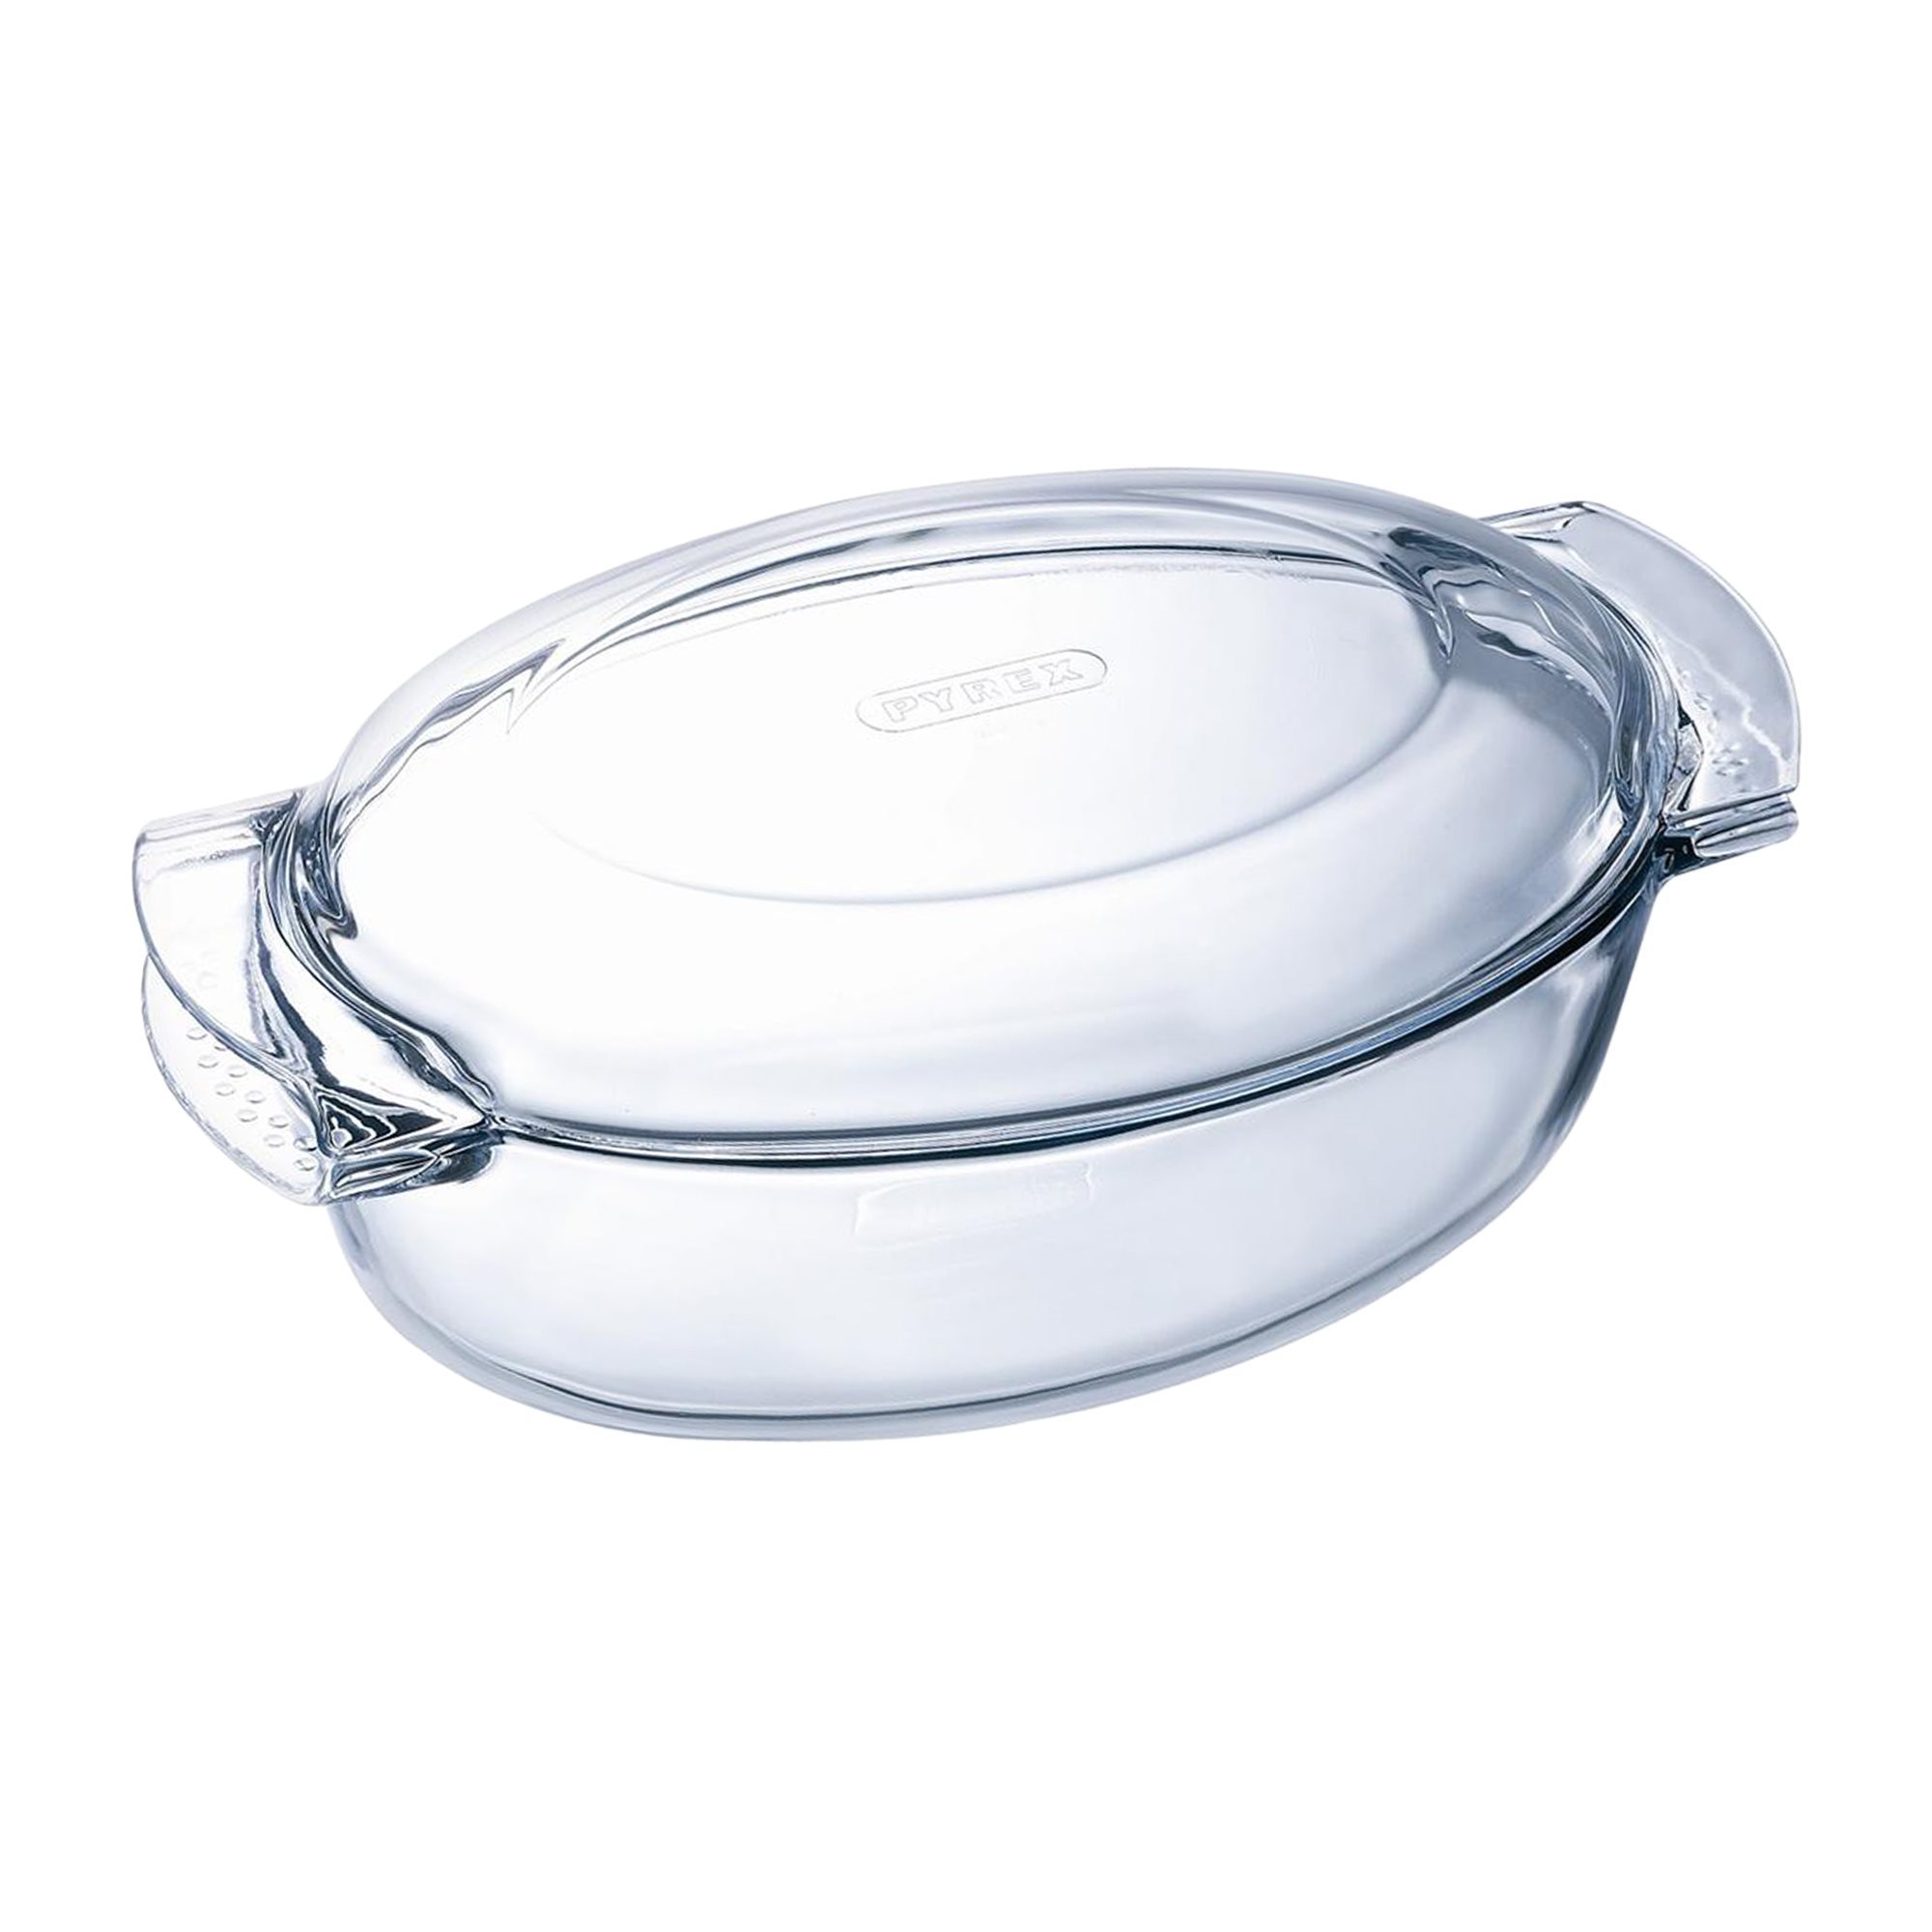 Fuente para horno ovalada - Fabricado en Vidrio - Apto para horno,  microondas, congelador y lavavajillas - 2 Litros